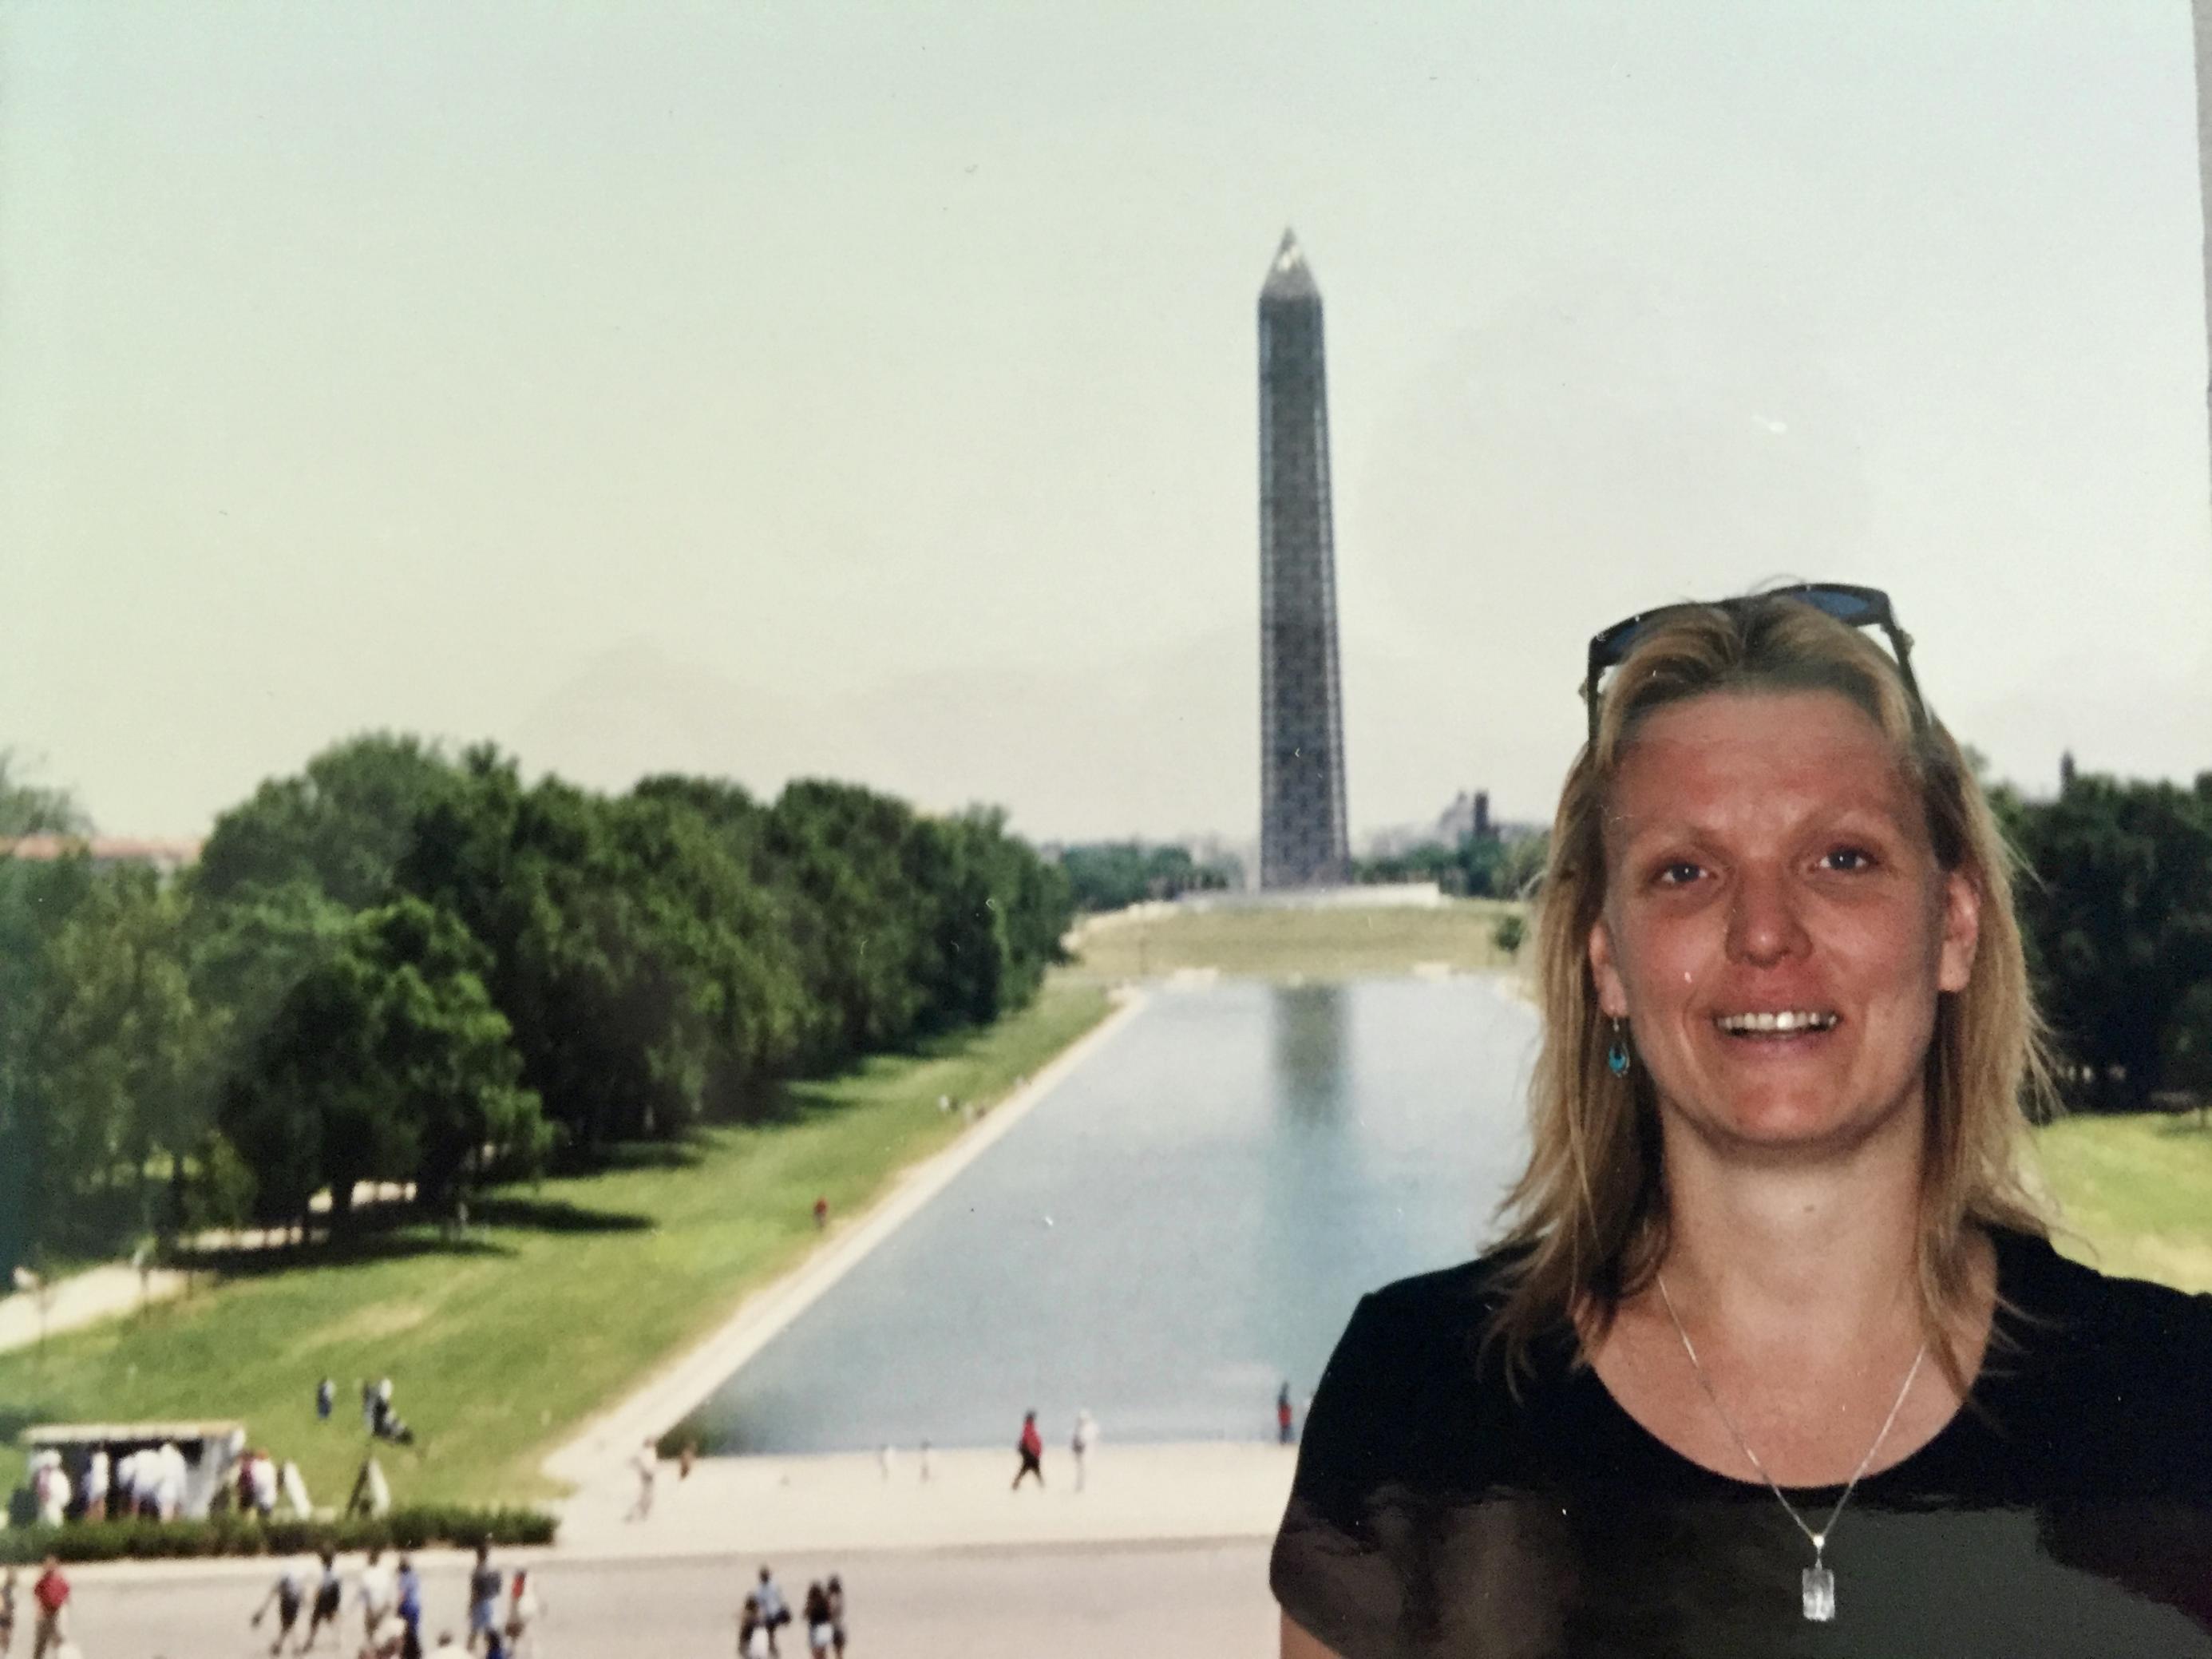 Eine Frau Mitte dreißig, blond mit dunklem T-Shirt, posiert vor dem Reflecting pool und dem Washington Monument